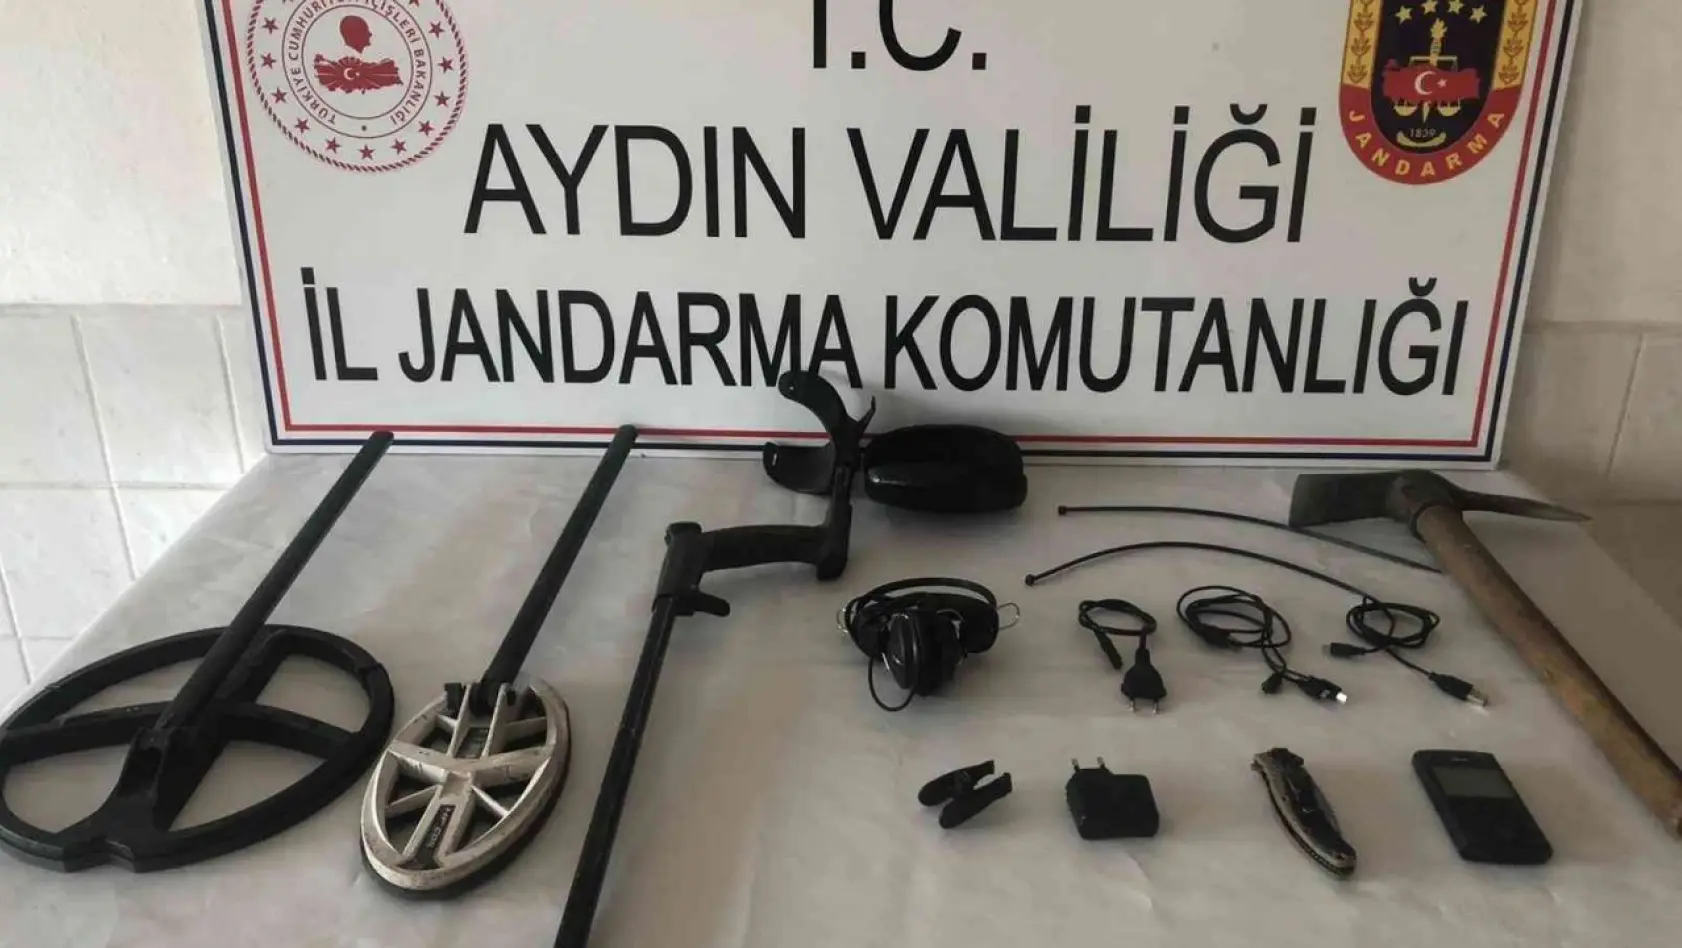 Aydın'da kaçak kazı yapan 2 kişi suç üstü yakalandı